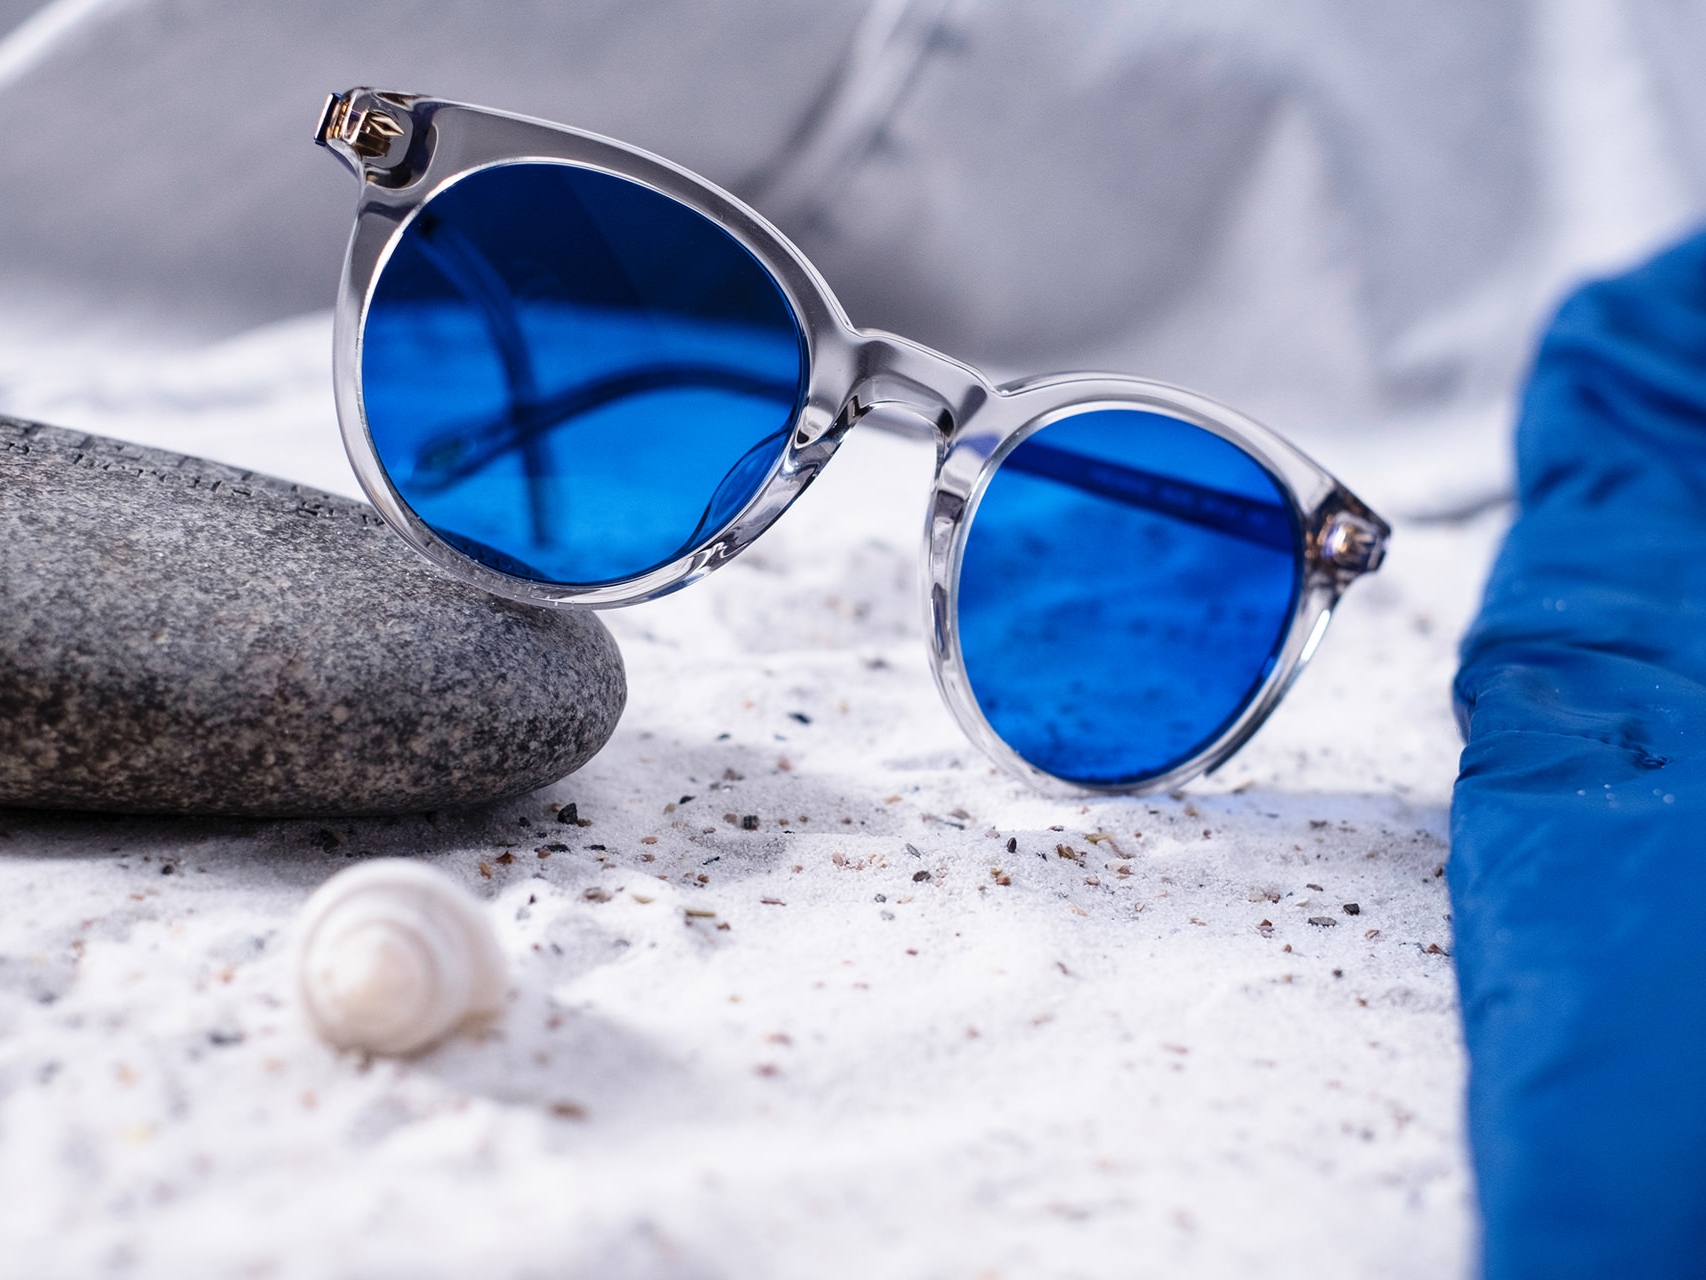 Billede af et par solbriller med blå farve lagt halvt ind over en sten